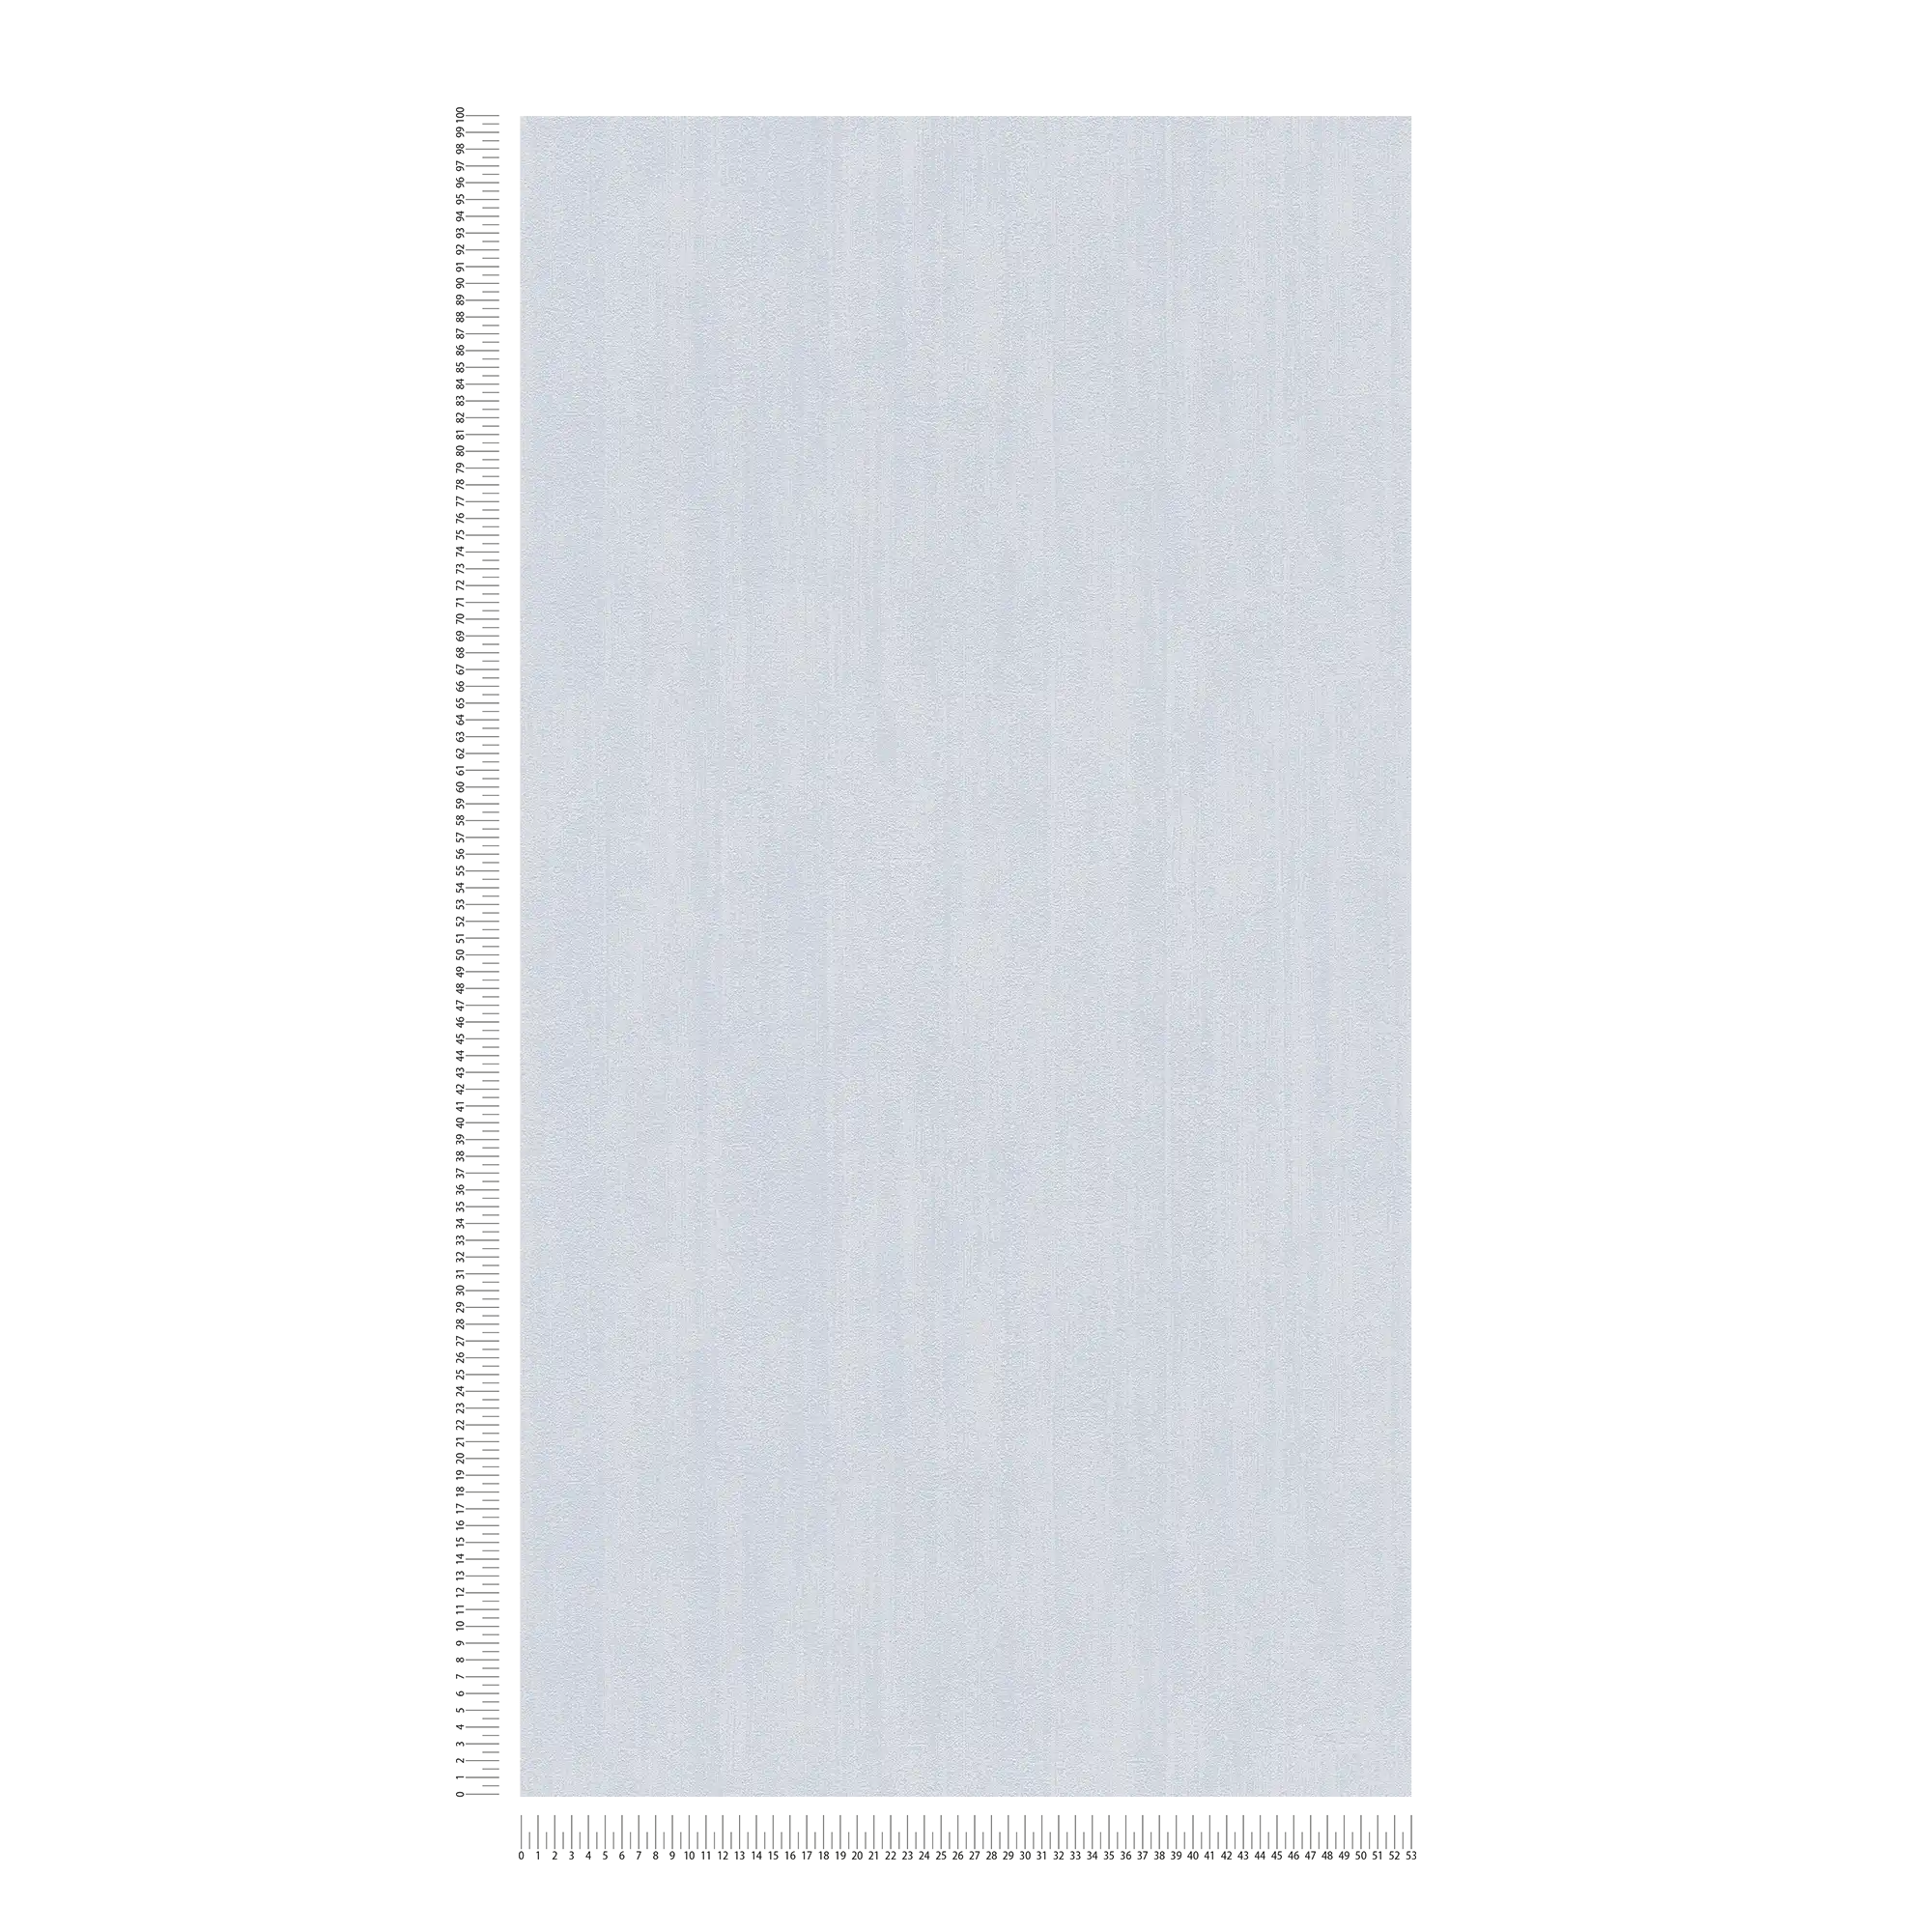             Hatch plain wallpaper with subtle texture - grey
        